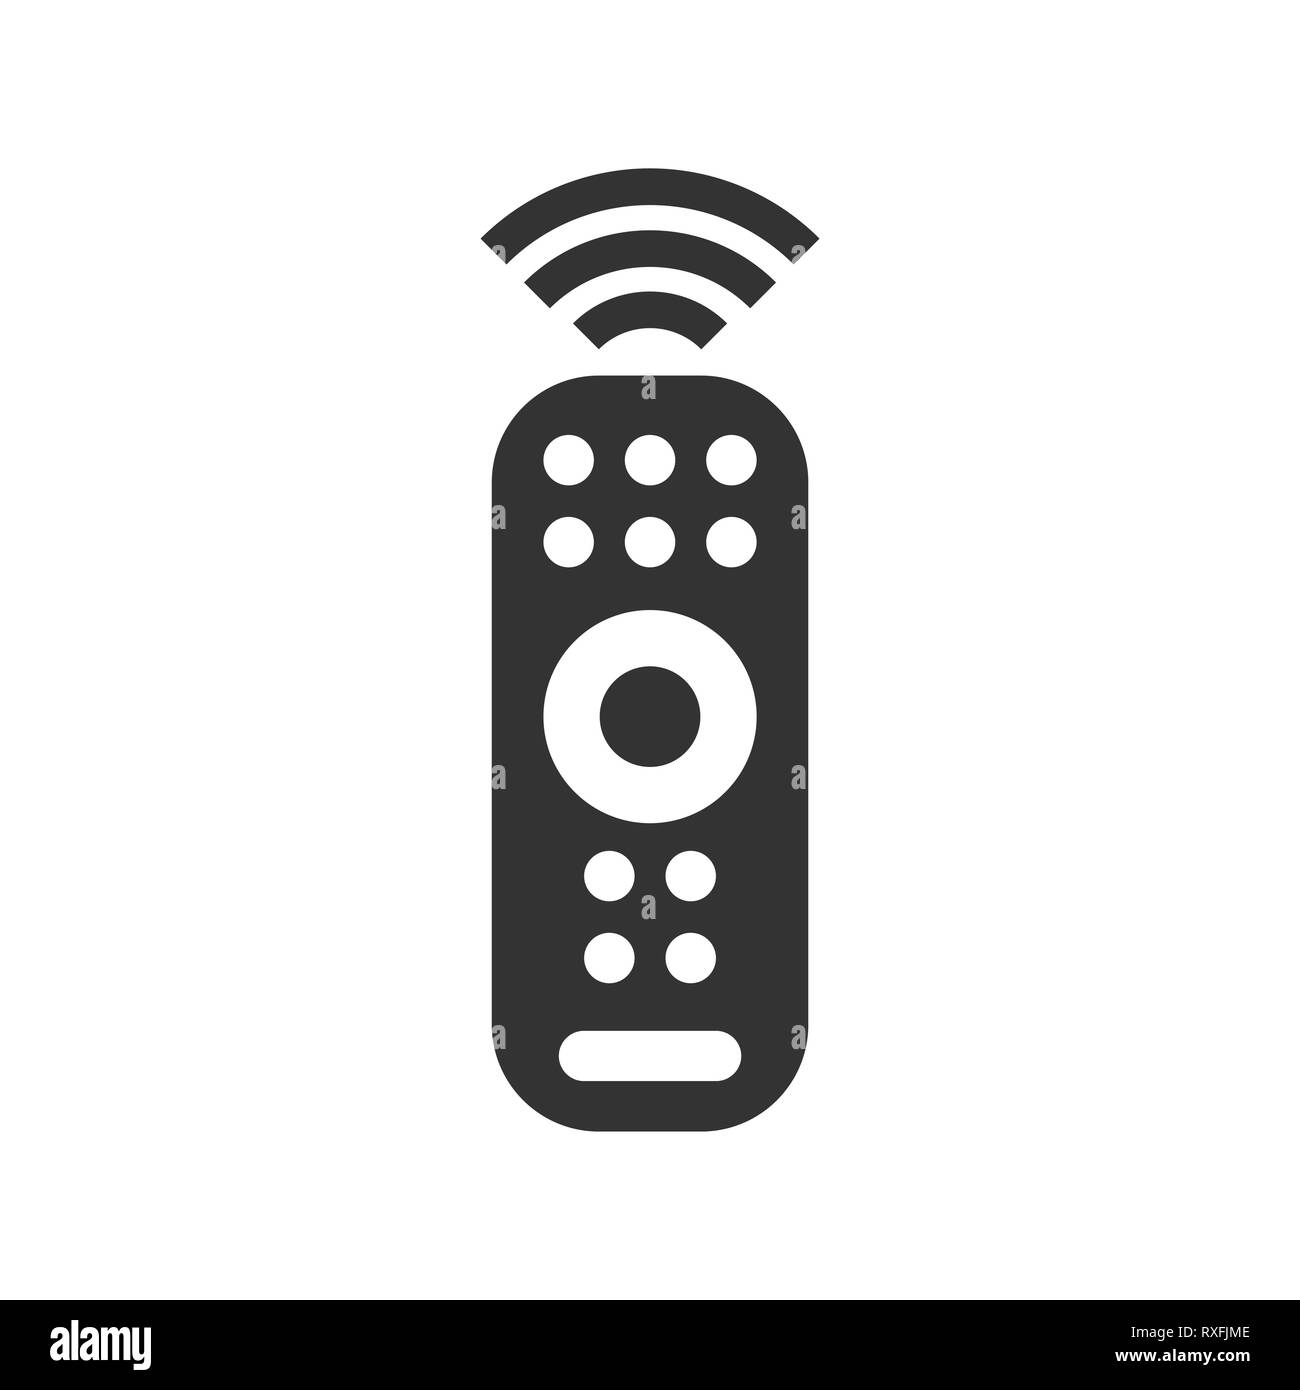 Icône de la télécommande Banque d'images noir et blanc - Alamy